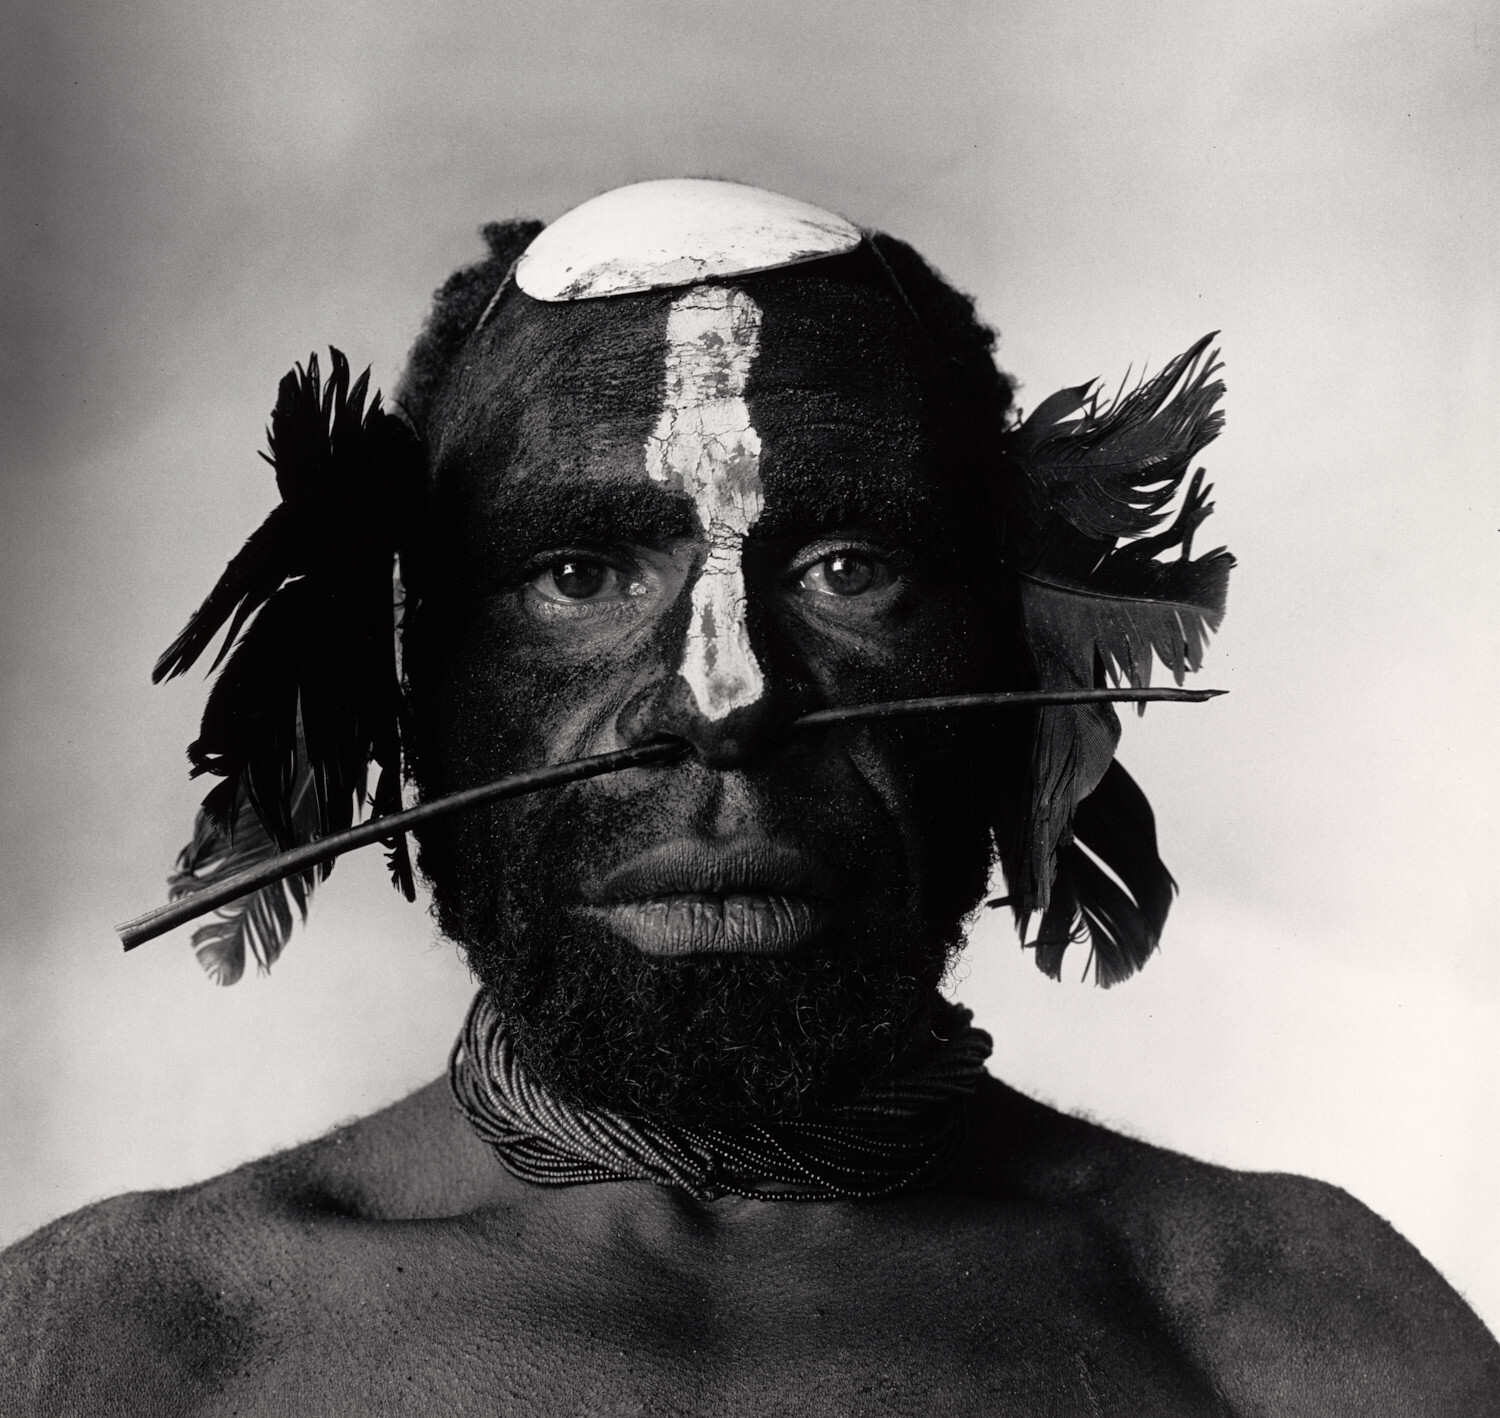 Соплеменник с украшением в носу, Новая Гвинея, 1970 г. Фотограф Ирвин Пенн